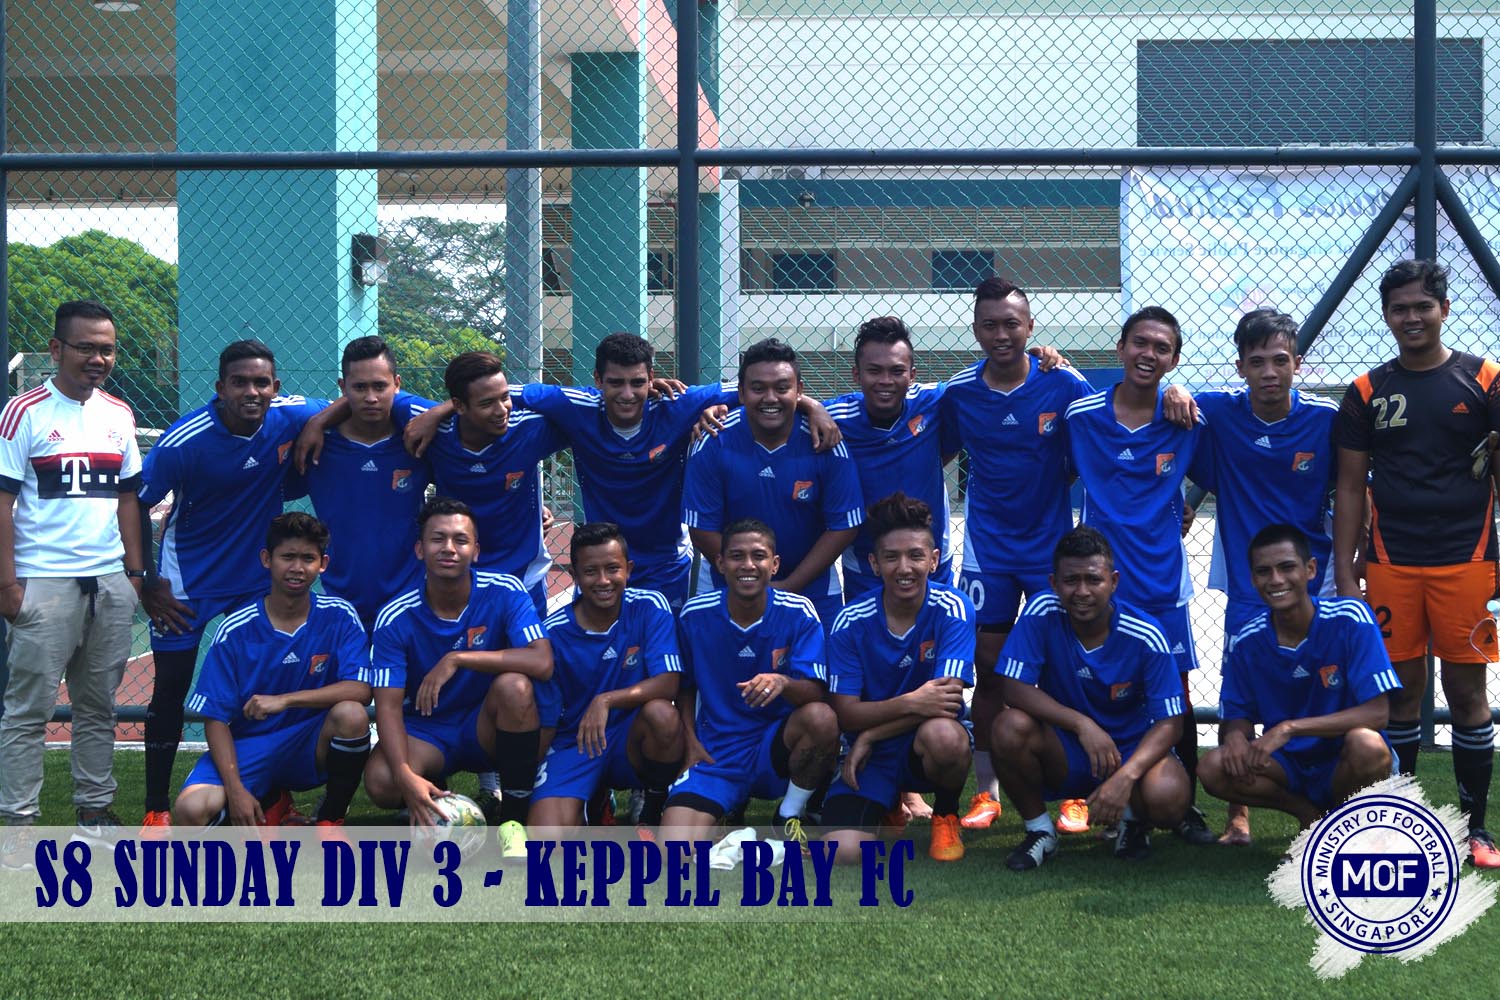 Keppel Bay FC